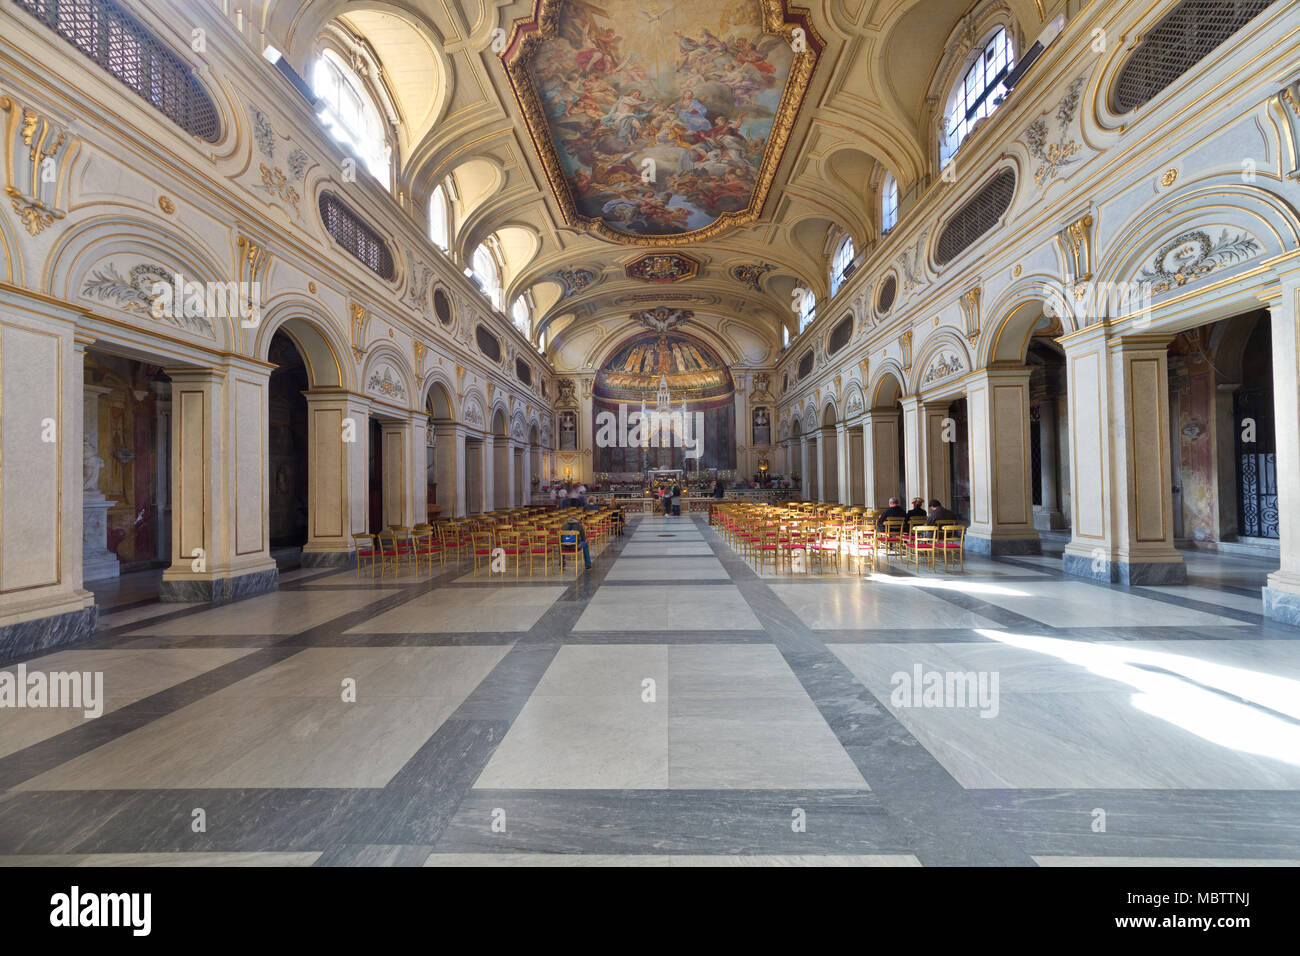 Basilica of Santa Cecilia in Trastevere - Rome - Interior Stock Photo